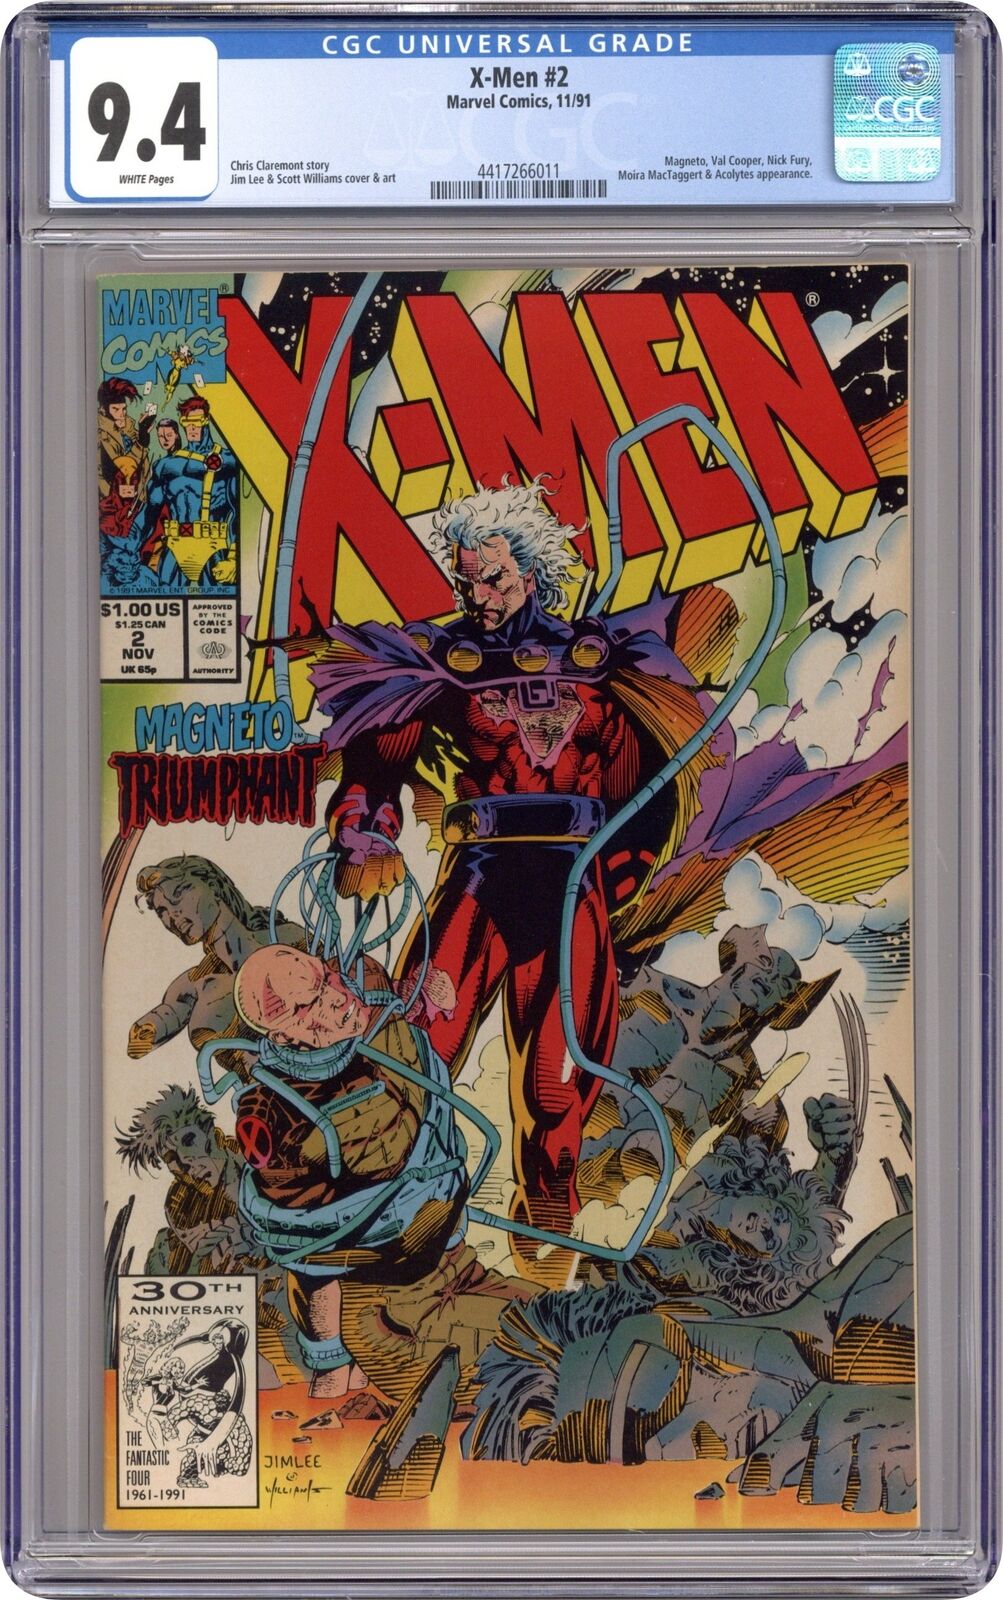 X-Men #2 CGC 9.4 1991 4417266011